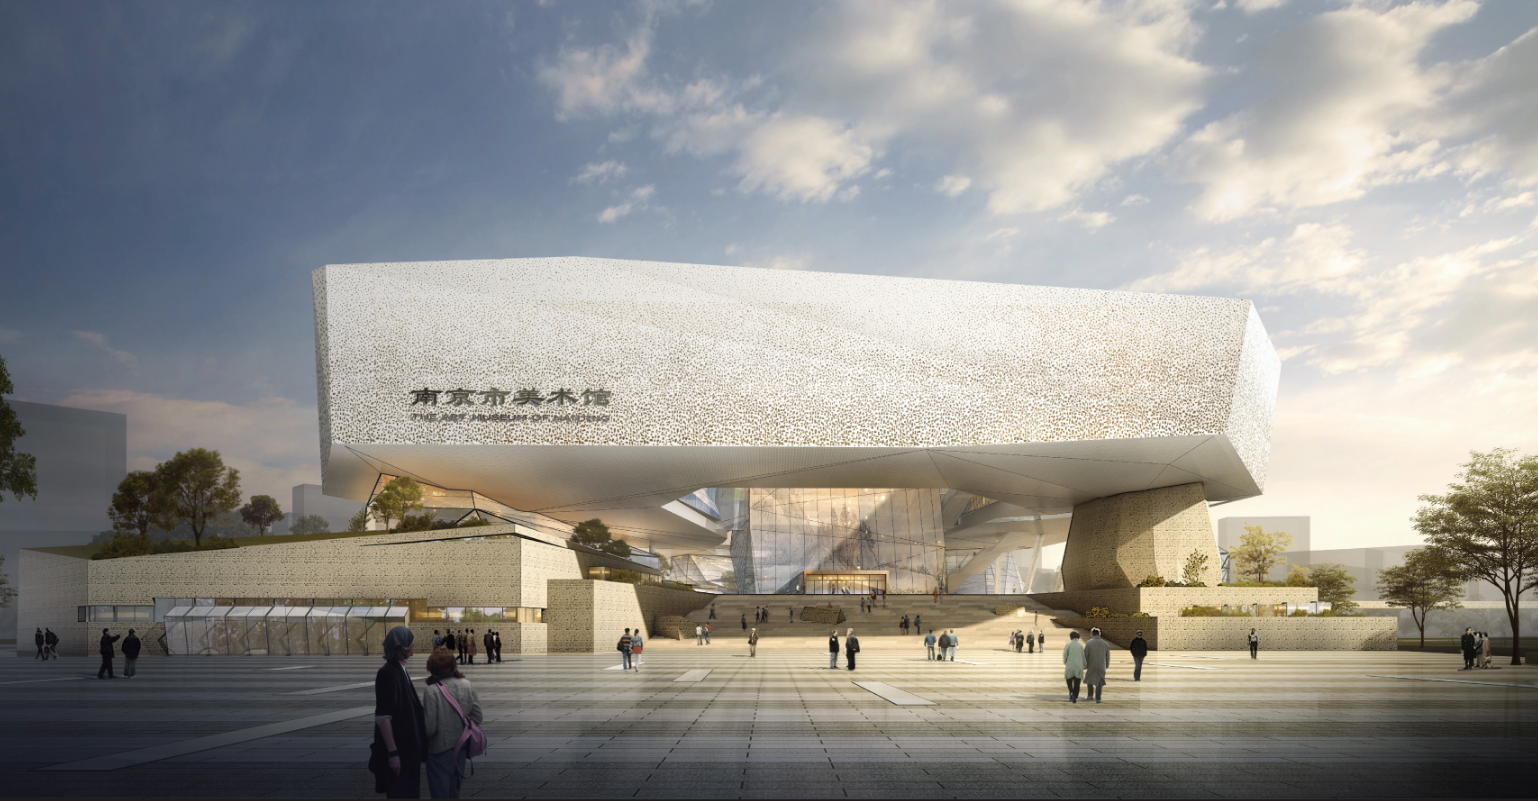 江北新区将添市民中心图书馆美术馆后年建成开放